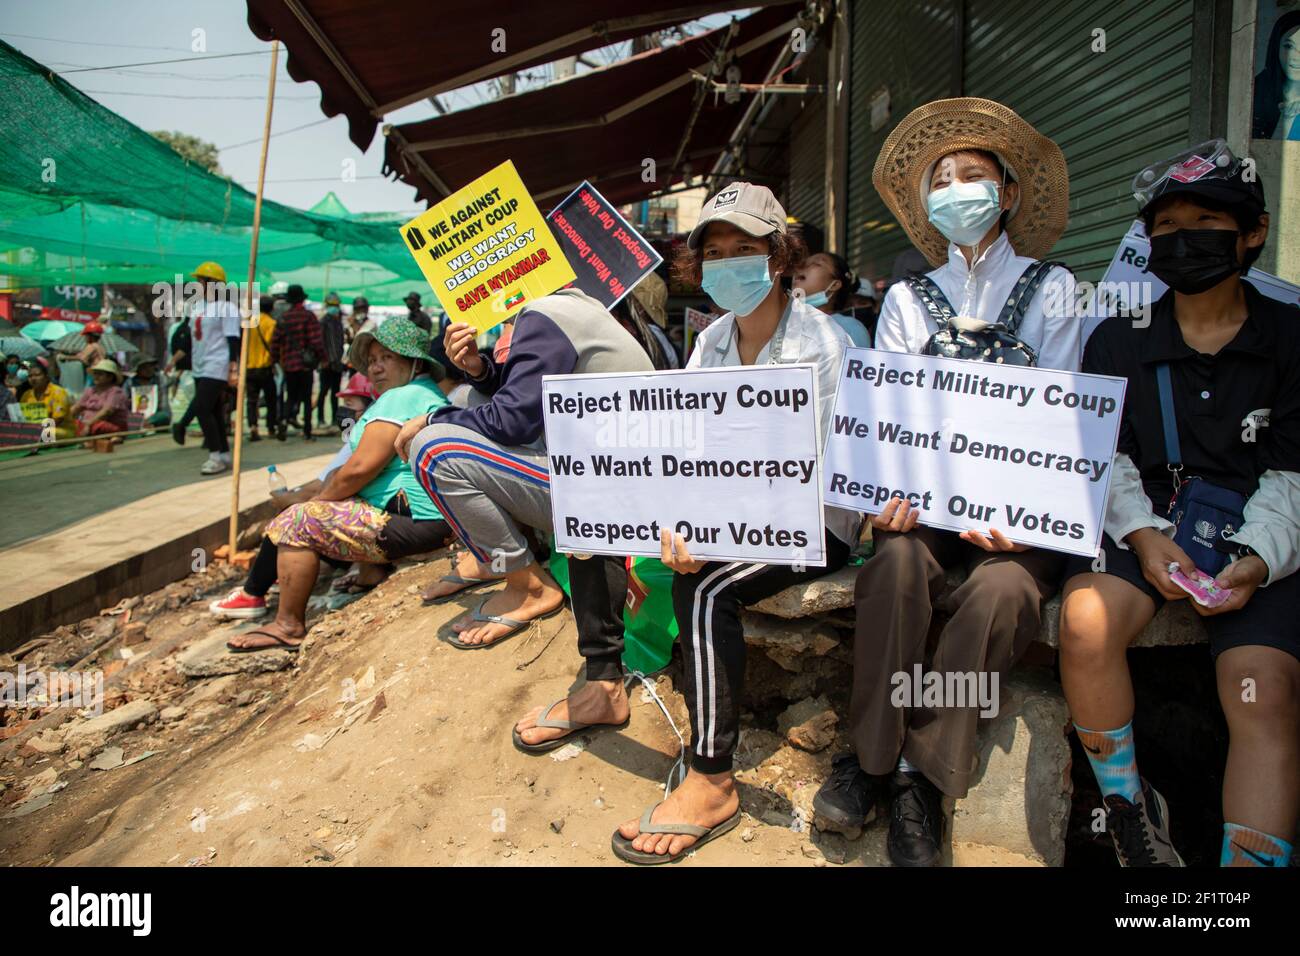 Yangon, Yangon, Myanmar. März 2021, 9th. Während der Demonstration gegen die Junta in Yangon am 9. März 2021 halten Demonstranten Plakate ab. Tausende Menschen gingen am 37th. Tag des Protests gegen einen Militärputsch auf die Straßen von Yangon und forderten die Freilassung von Aung San Suu Kyi. Das Militär von Myanmar nahm am 1st. Februar 2021 den Staatsrat von Myanmar Sung San Suu Kyi fest und erklärte den Ausnahmezustand, während es die Macht im Land für ein Jahr erging, nachdem es die Wahl gegen die Nationale Liga für Demokratie verloren hatte. Quelle: Thuya Zaw/ZUMA Wire/Alamy Live News Stockfoto